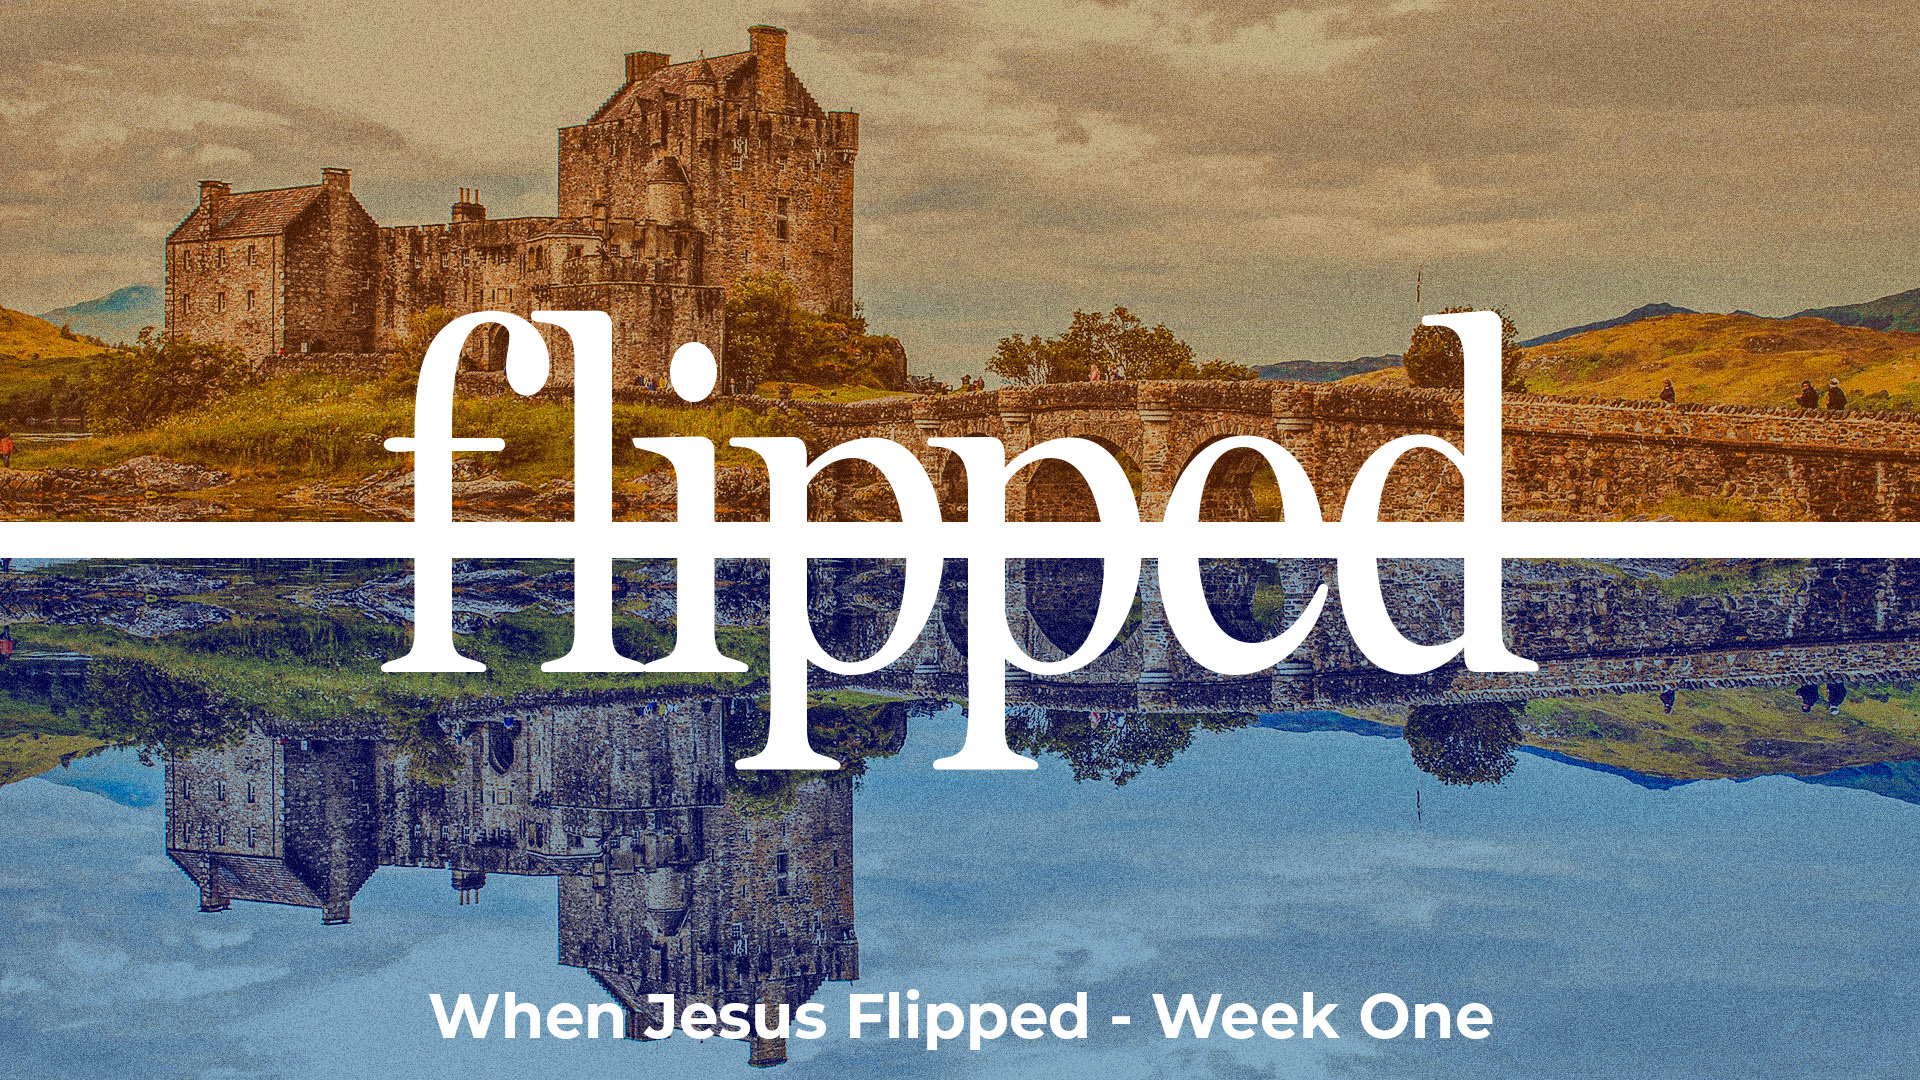 When Jesus Flipped - Week One